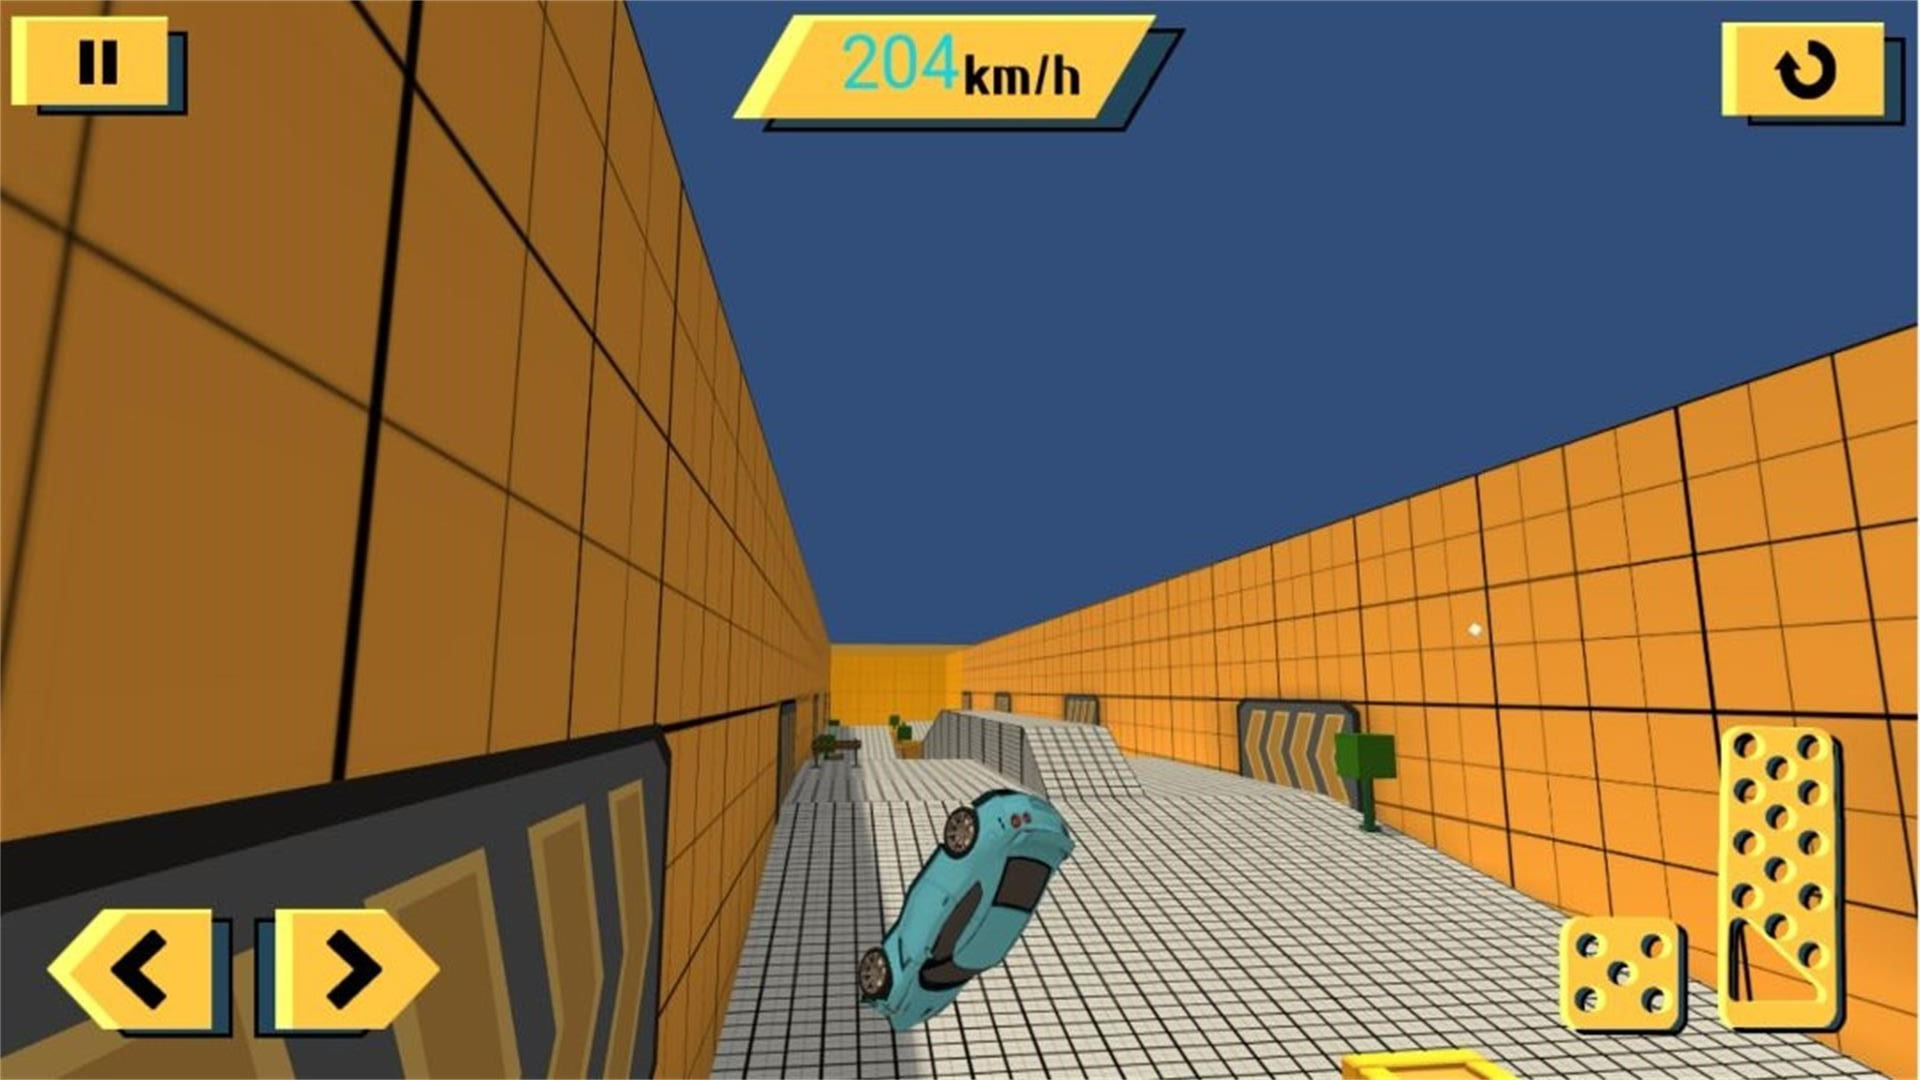 车辆碰撞模拟挑战安卓版